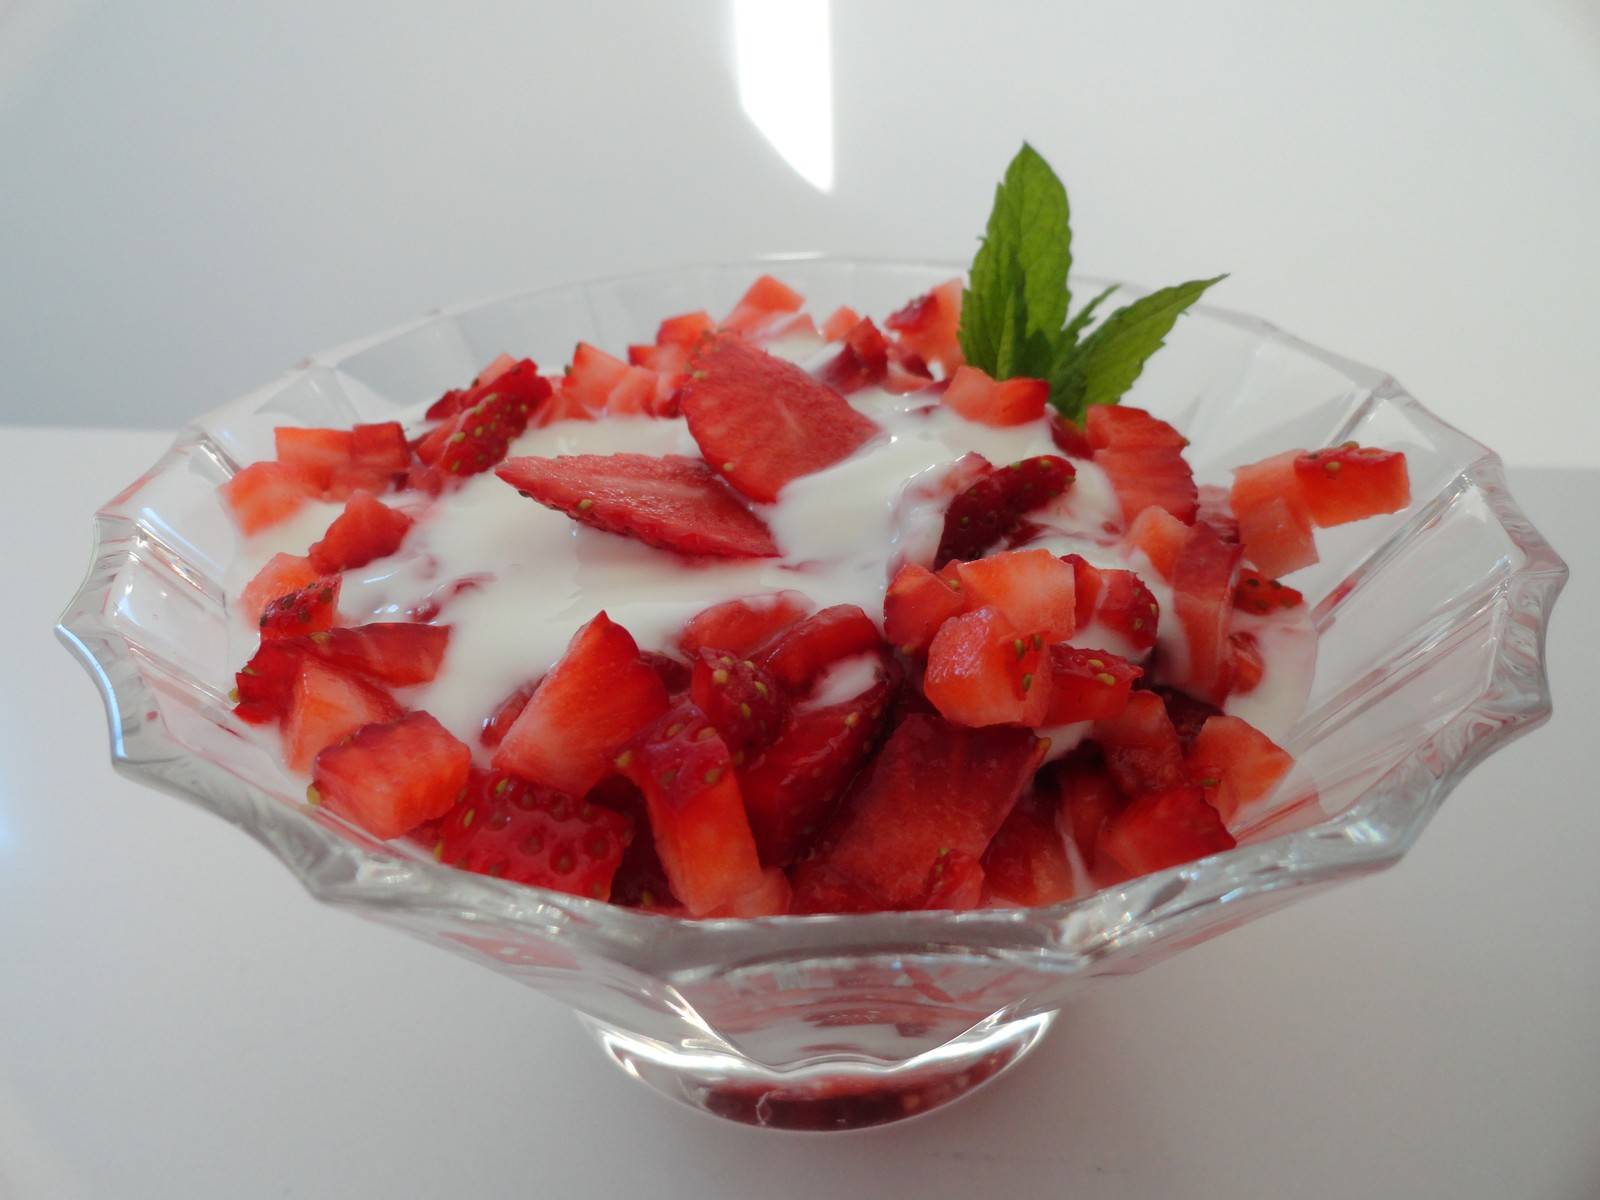 Joghurt-Mascarponecreme mit frischen Erdbeeren